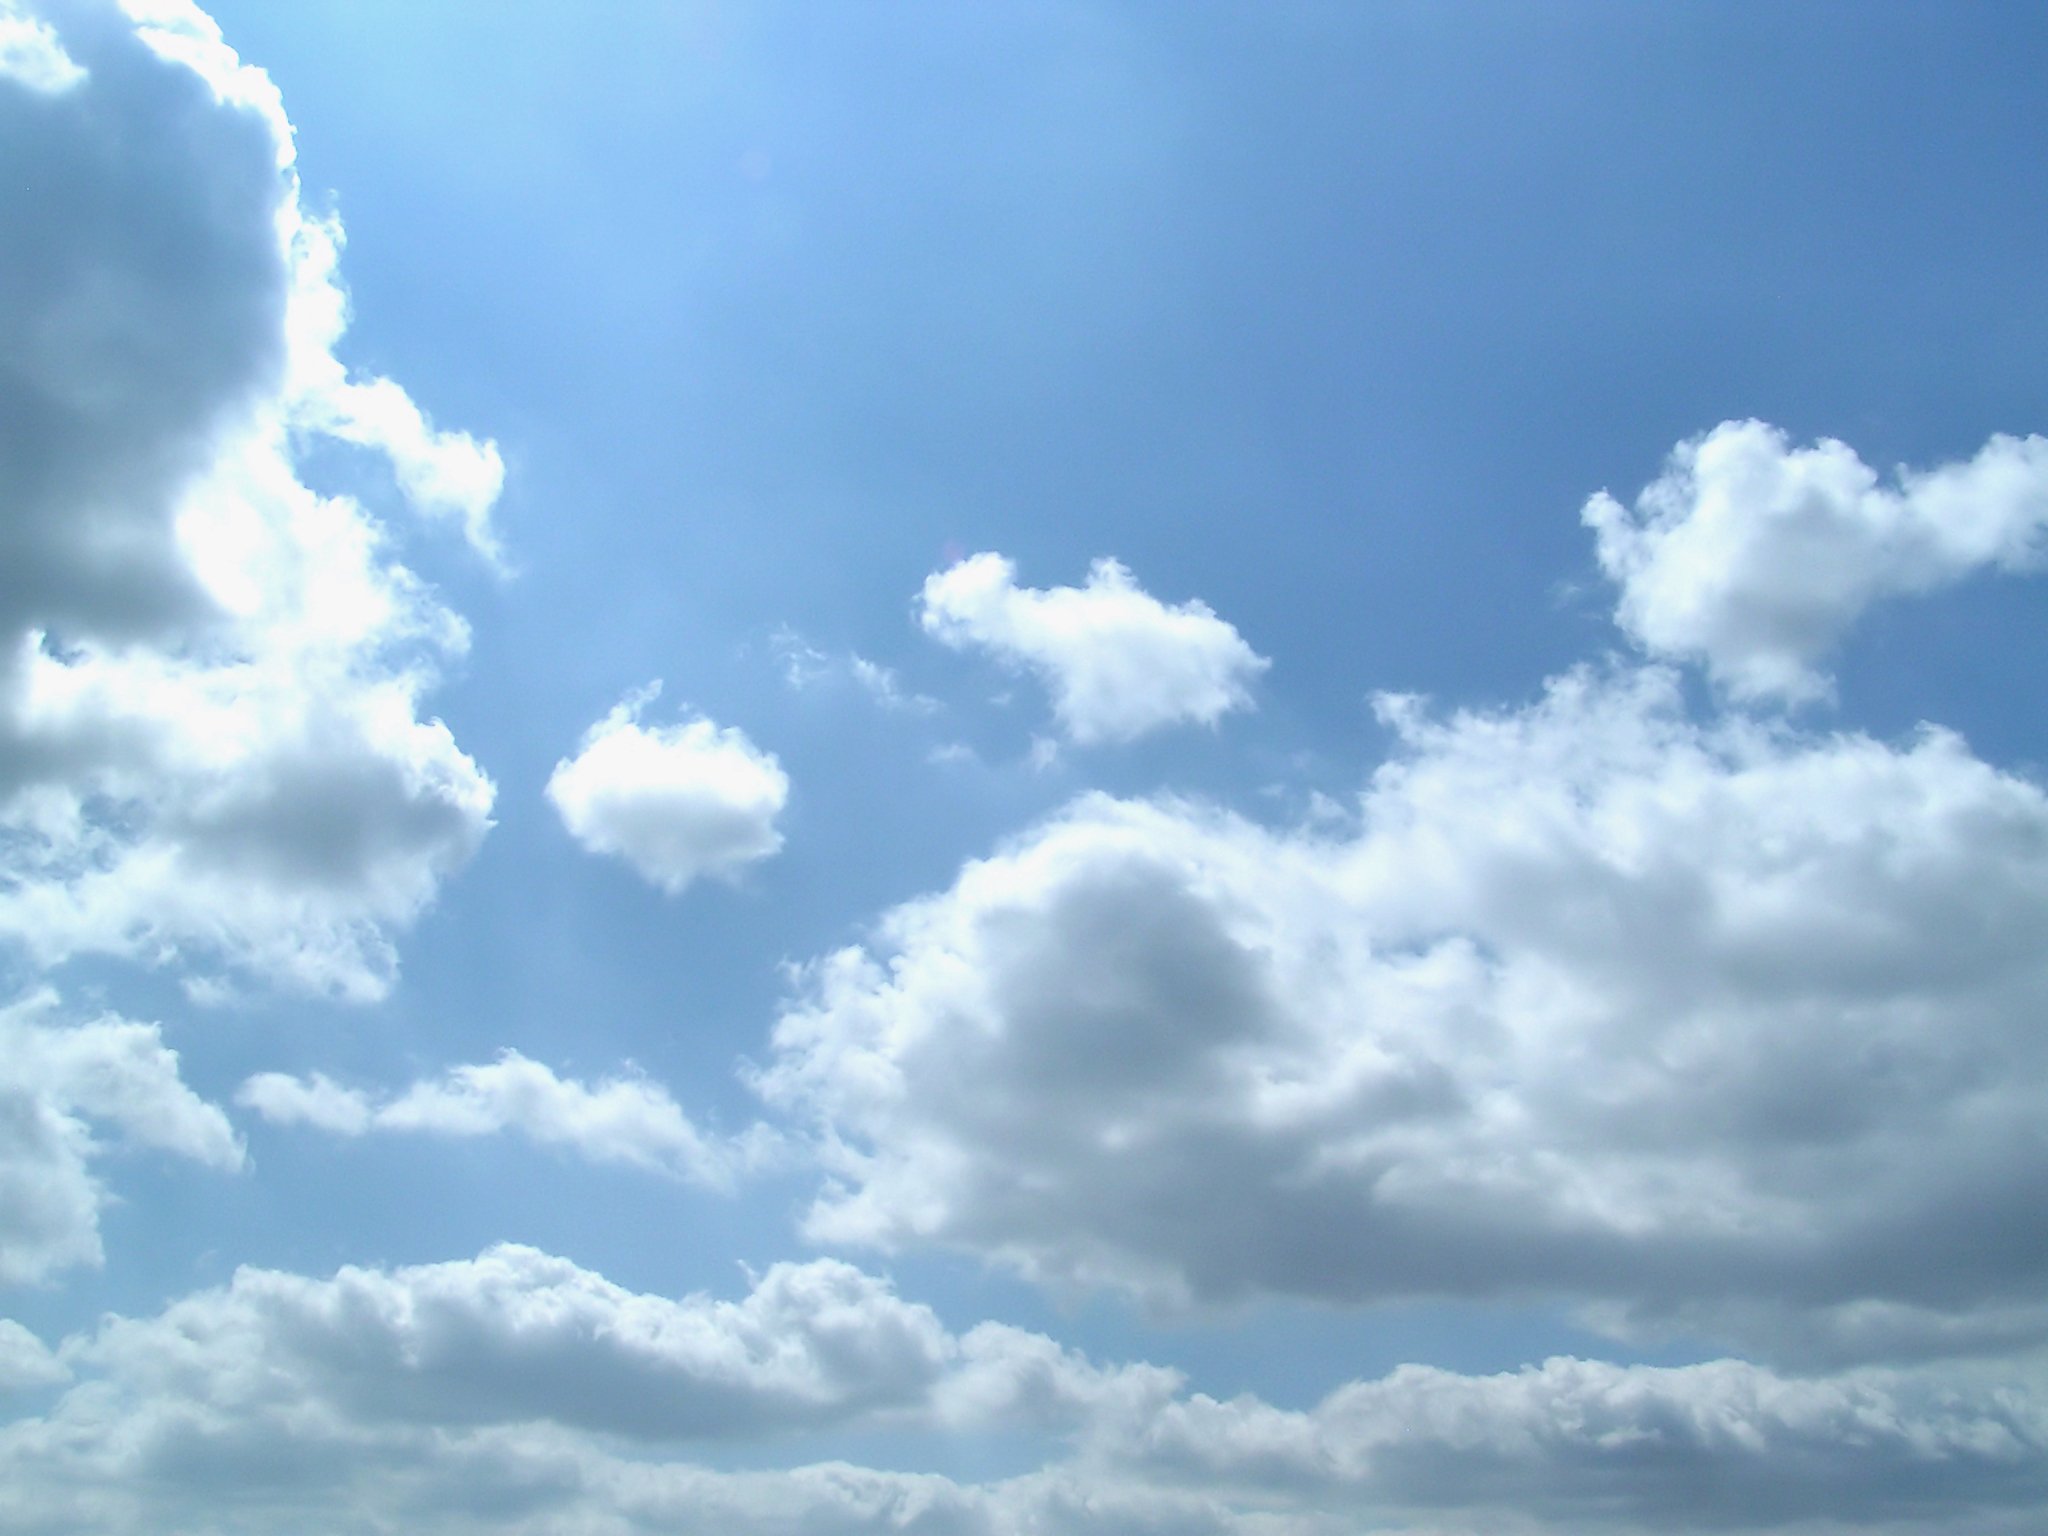 シエロの壁紙,空,雲,昼間,積雲,青い